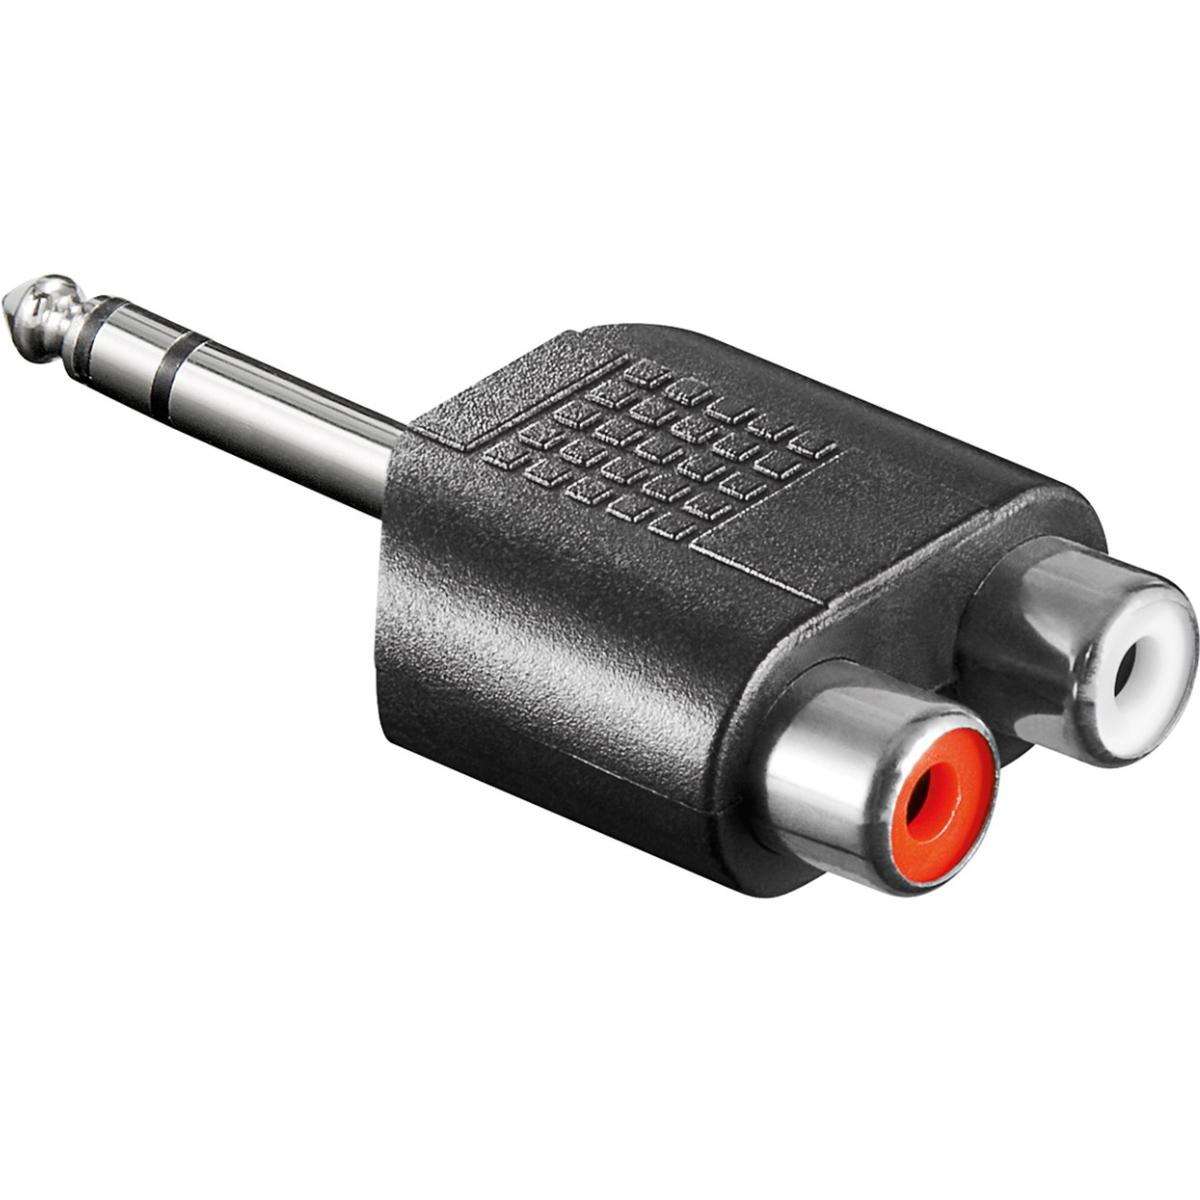 Klinkenstecker 6,3 mm Buchse Adapter - Valueline